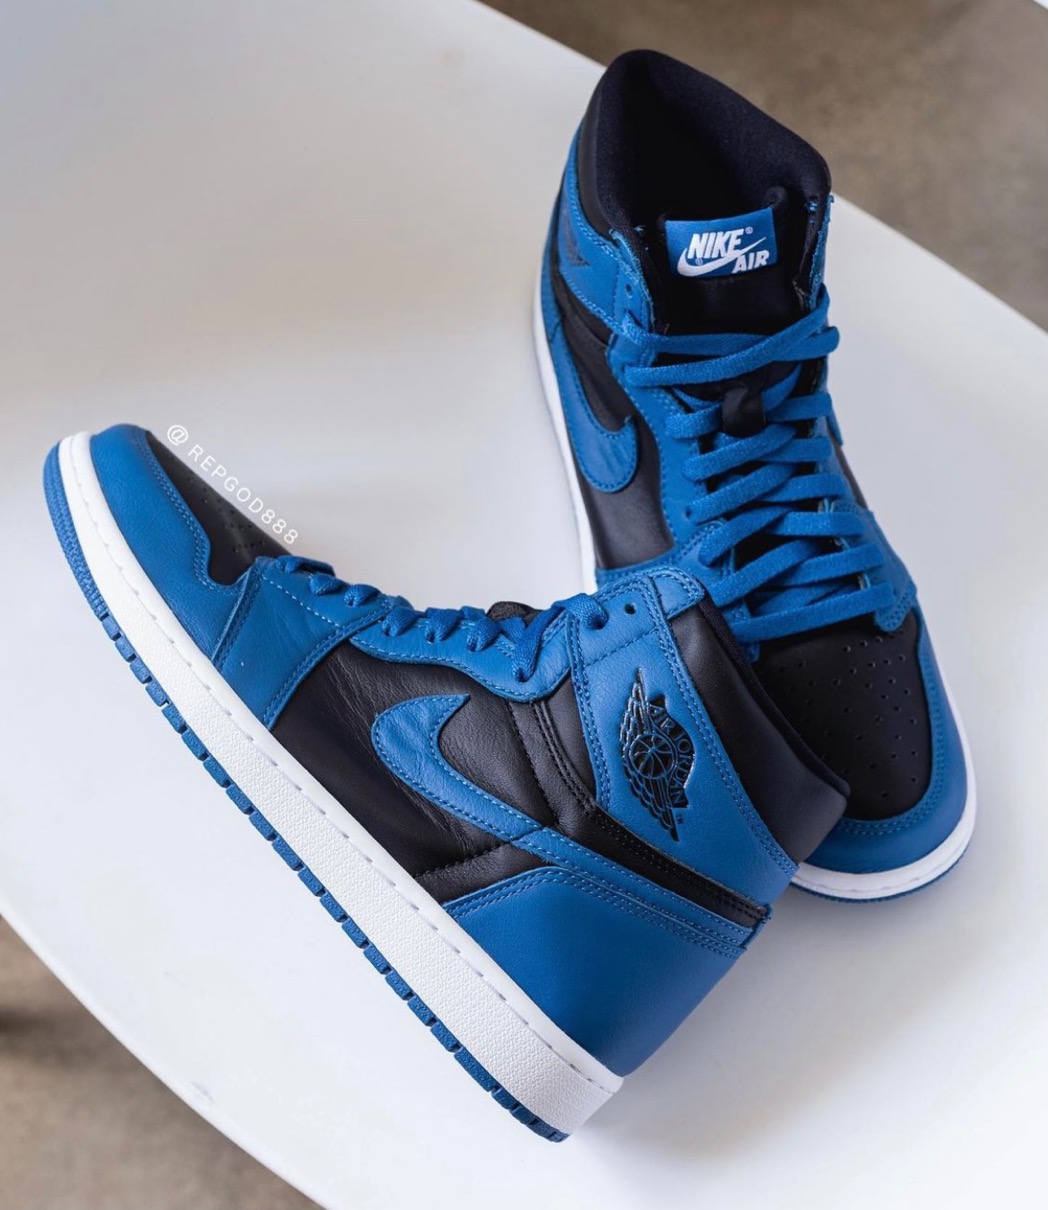 Nike】Air Jordan 1 Retro High OG “Dark Marina Blue”が国内2月5日に